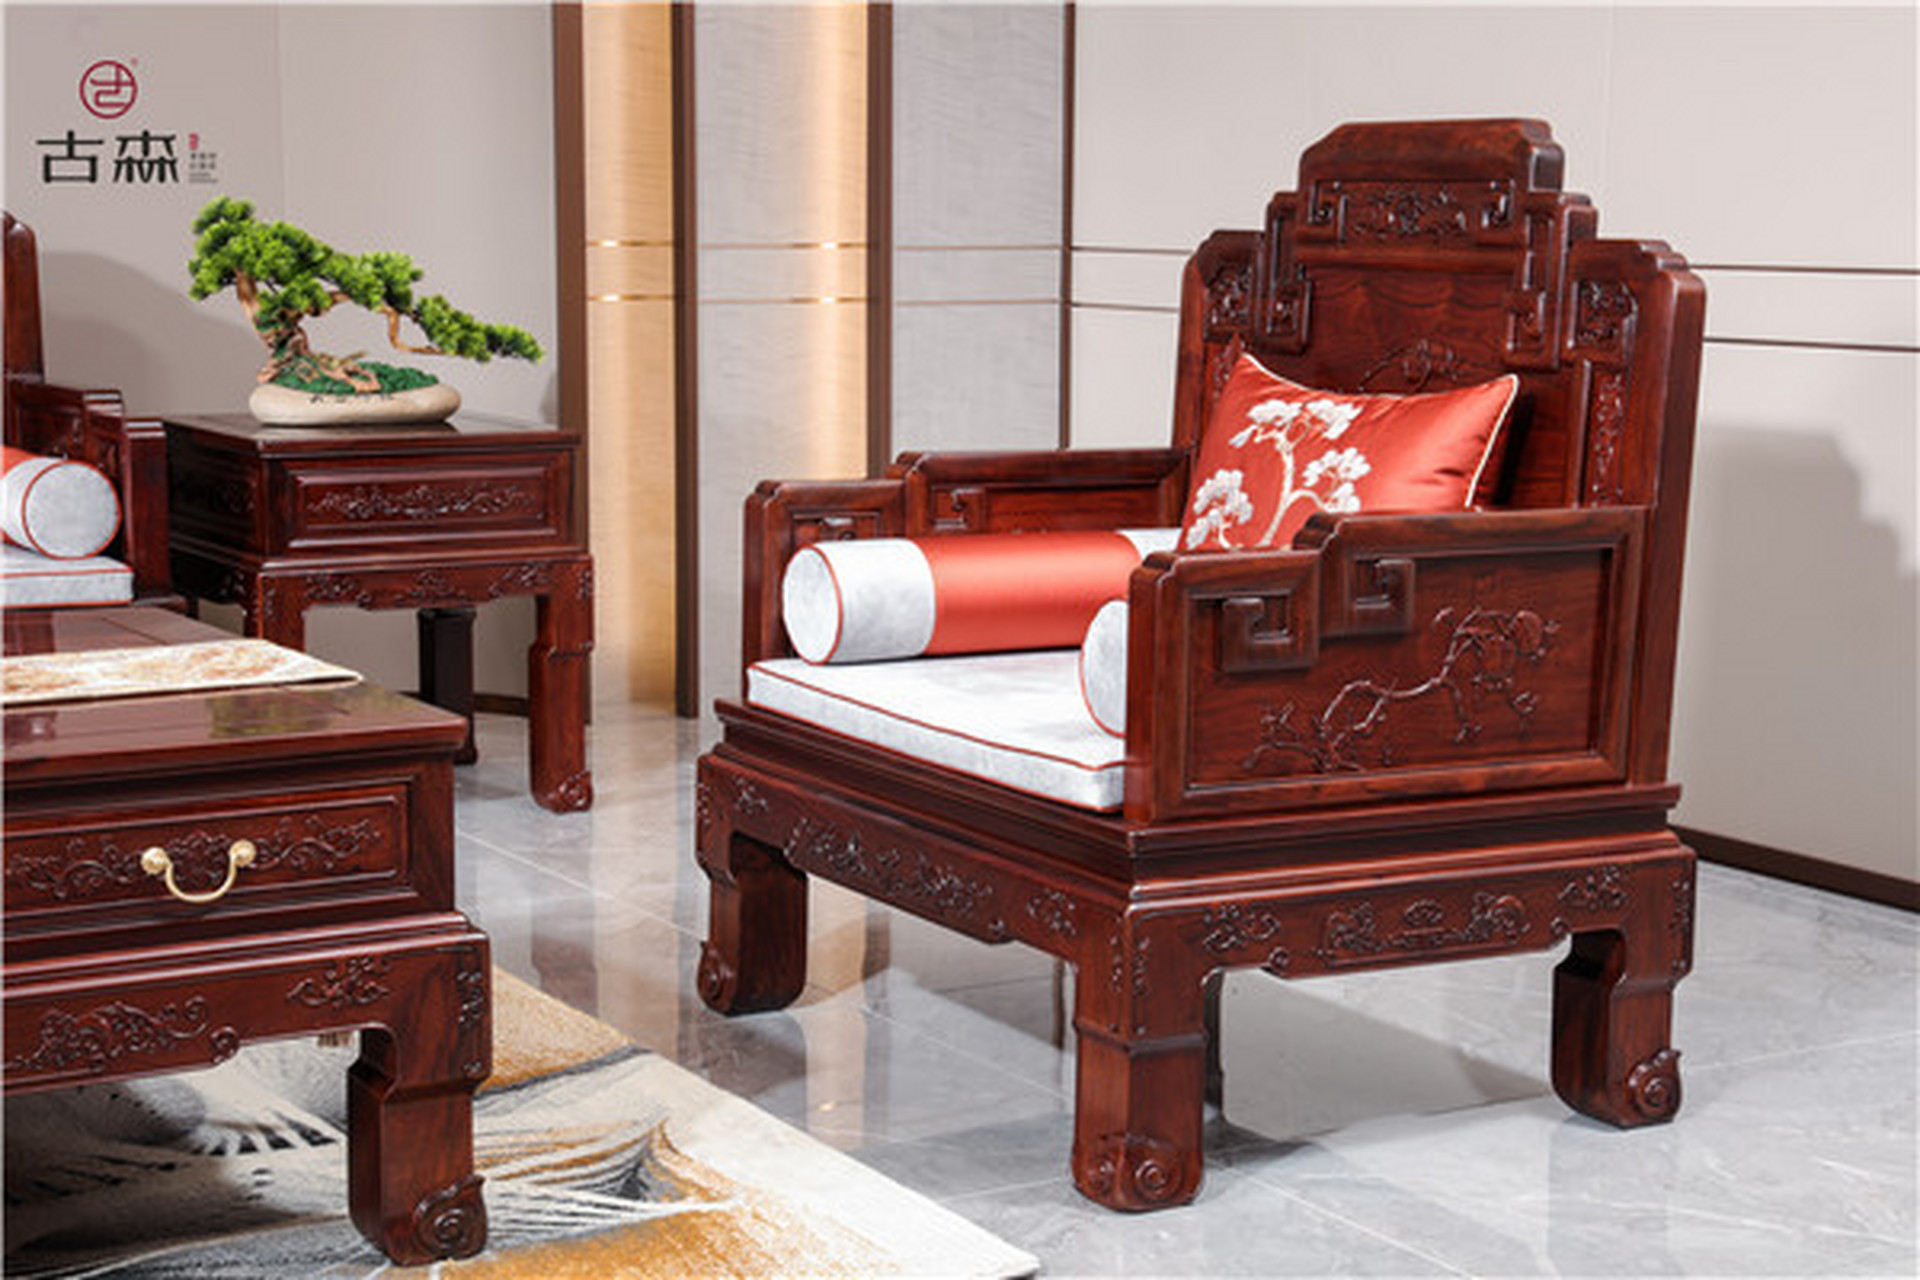 古森红木《国宾沙发》由7件家具组成,包含三人位沙发1件,双人位沙发1